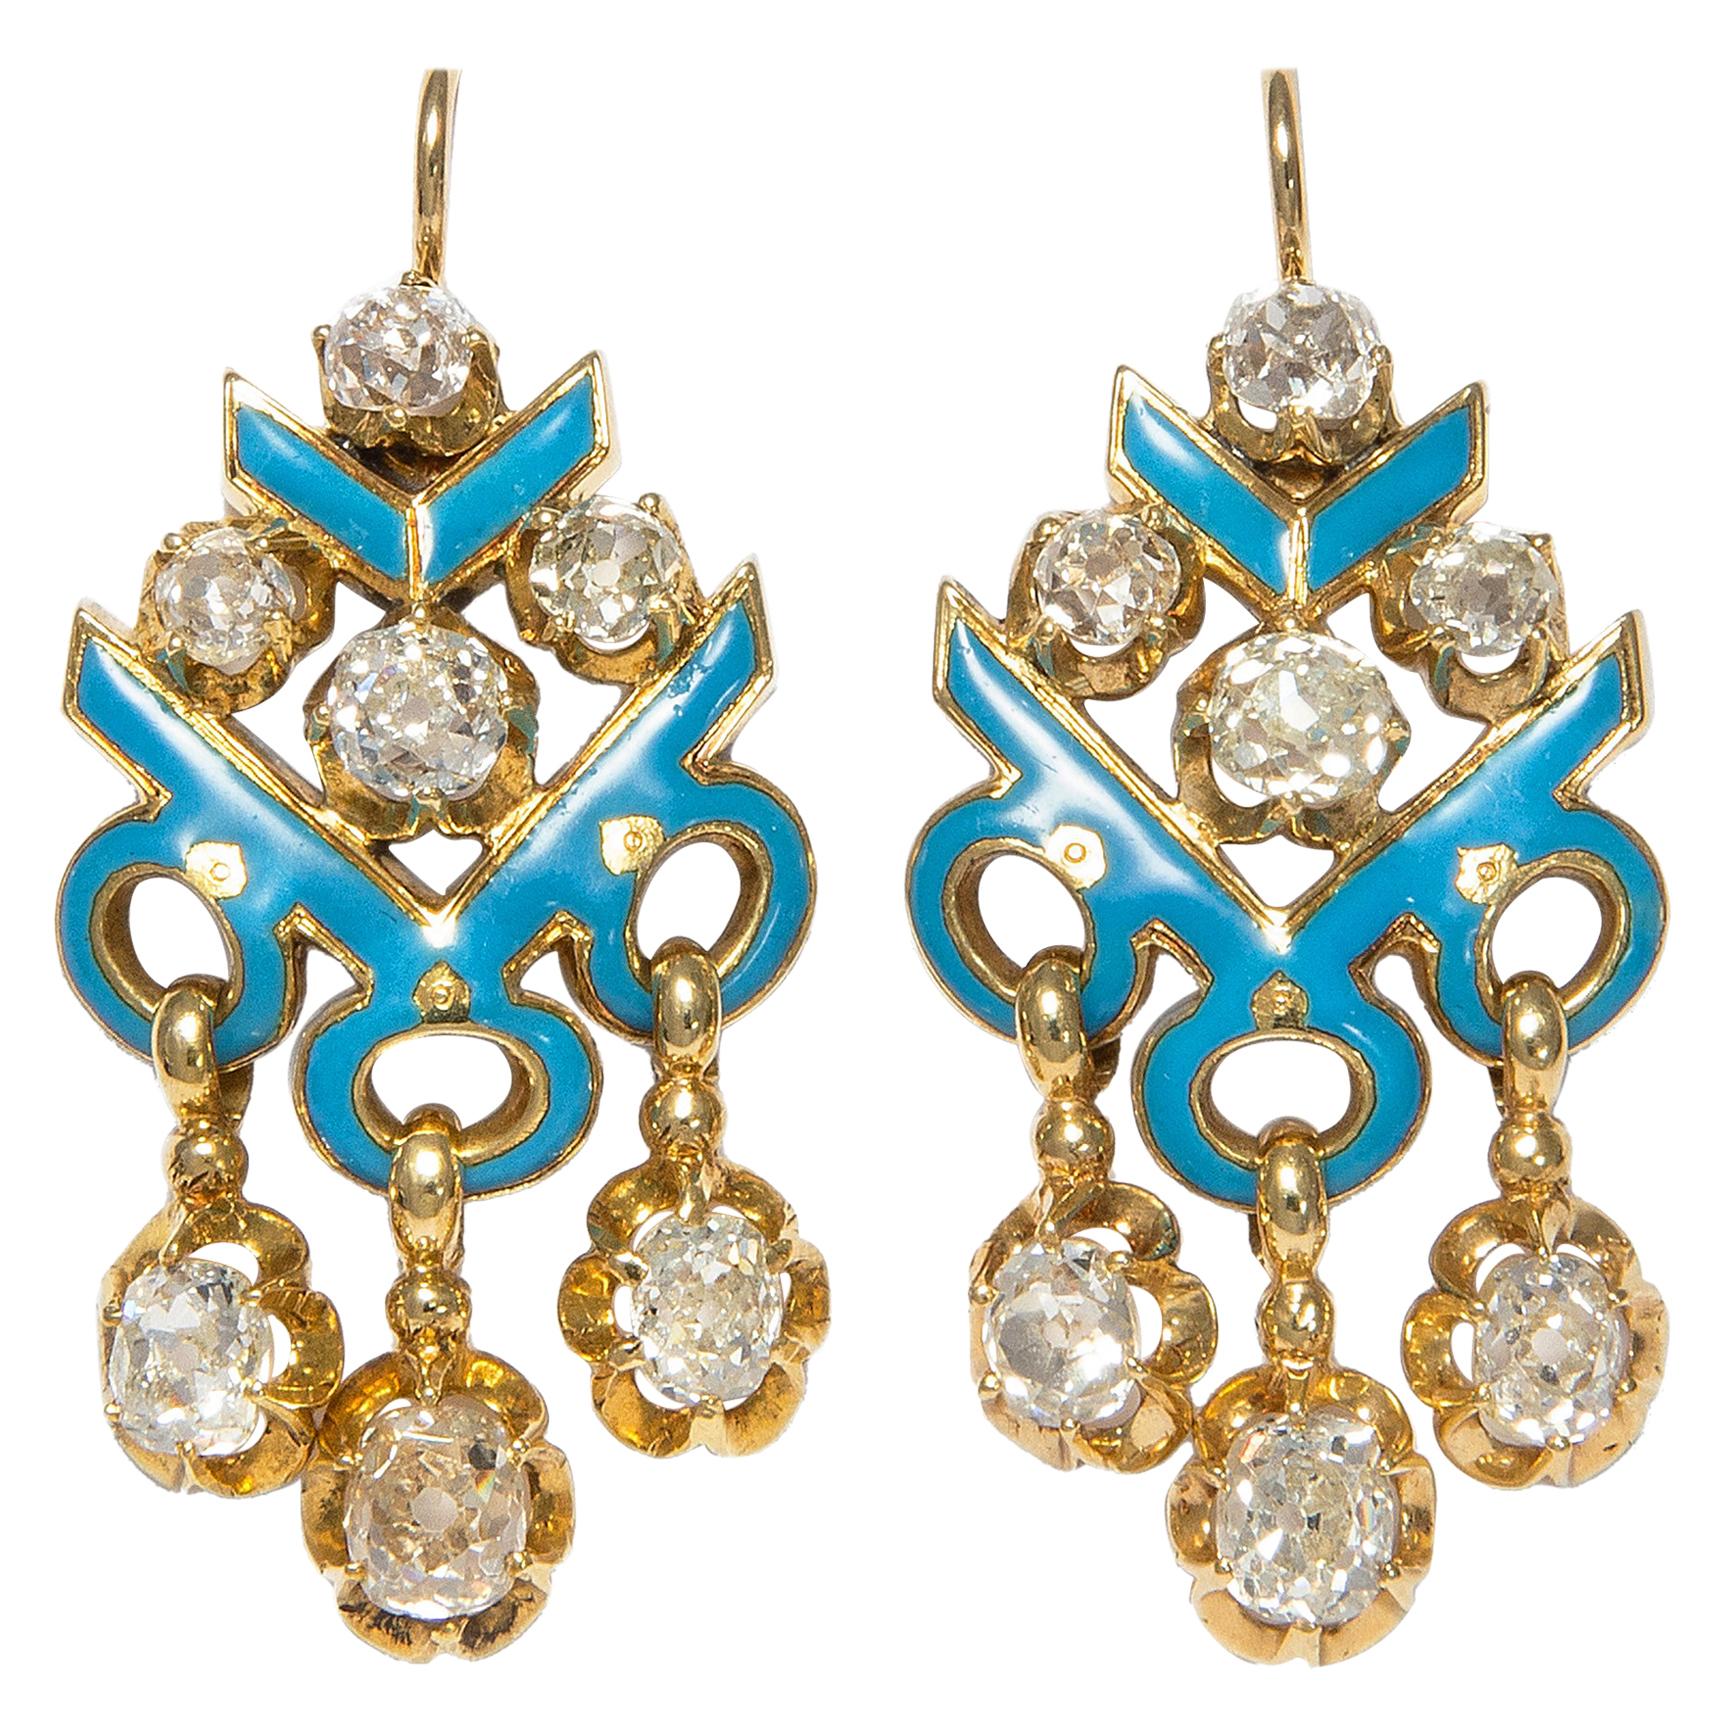 Victorian circa 1850 Certified 3.82 Carat Diamond Enamel Chandelier Earrings